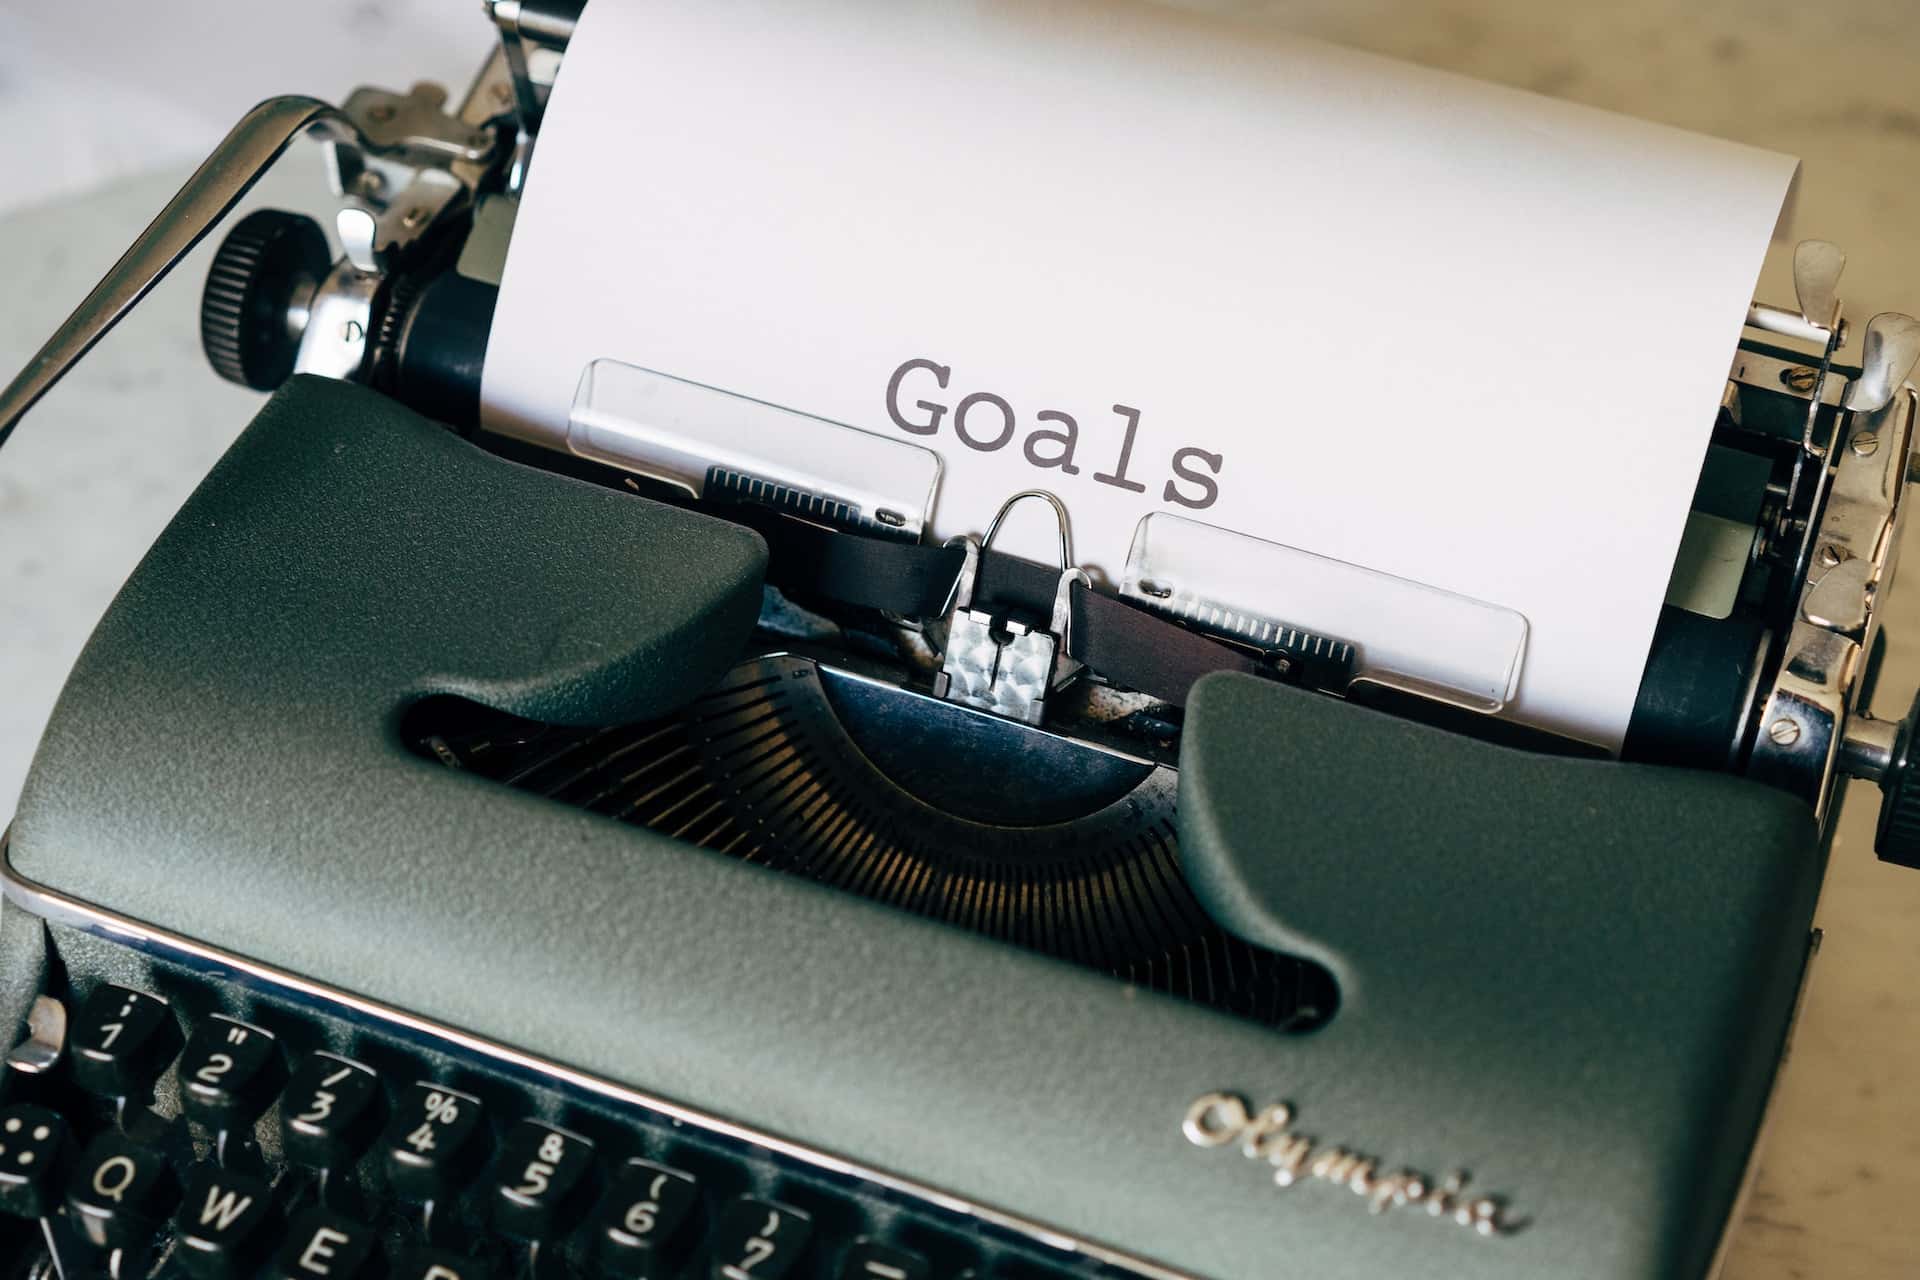 Mit einer Schreibmaschine ist das Wort "Goals" auf ein Blatt Papier geschrieben worden